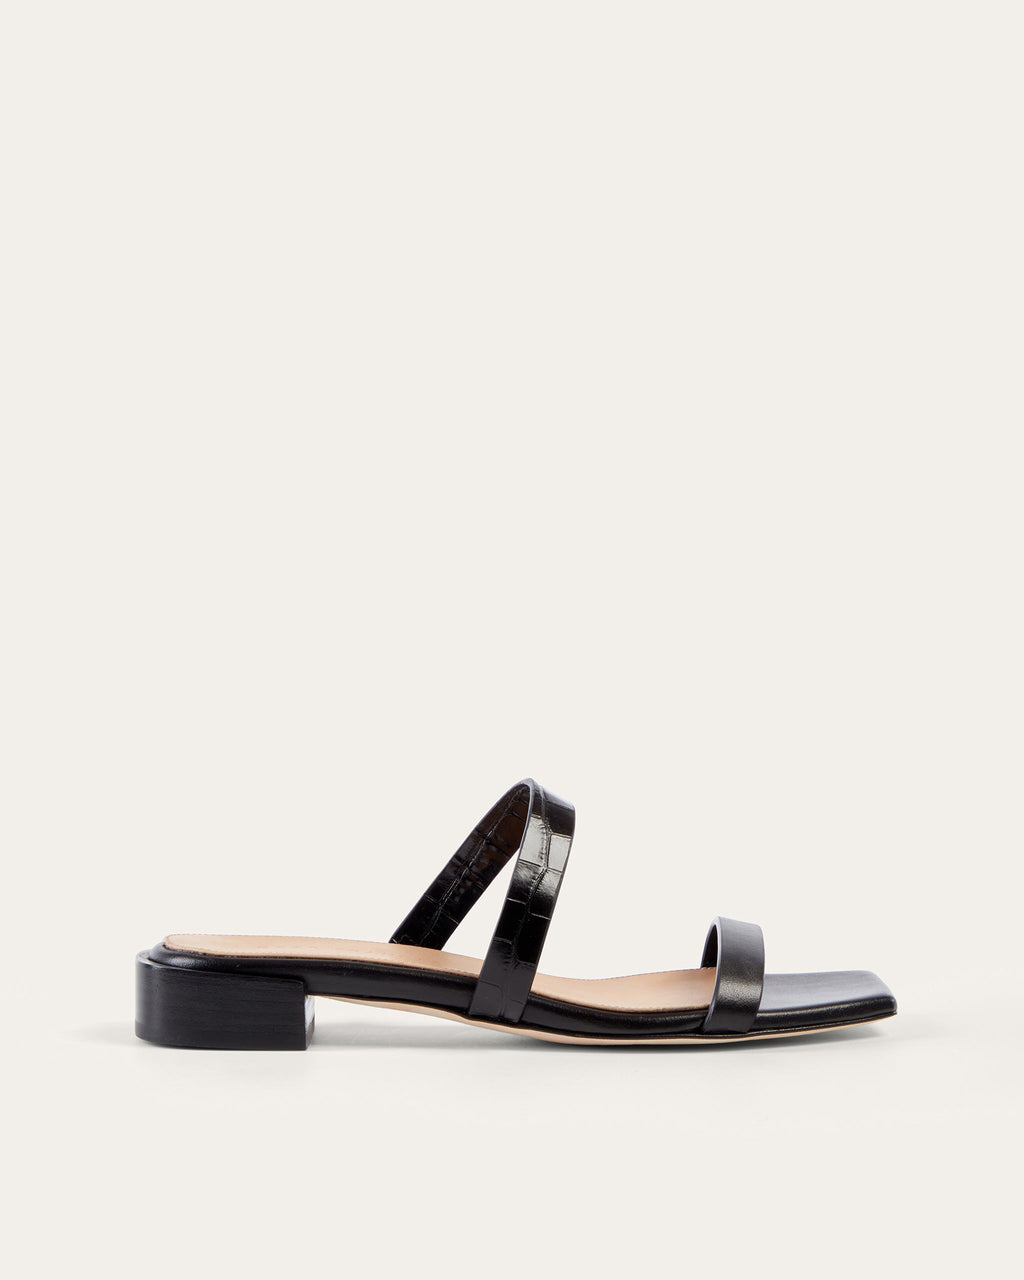 DEAR FRANCES | Women's shoes | Sandals, black Dear Frances